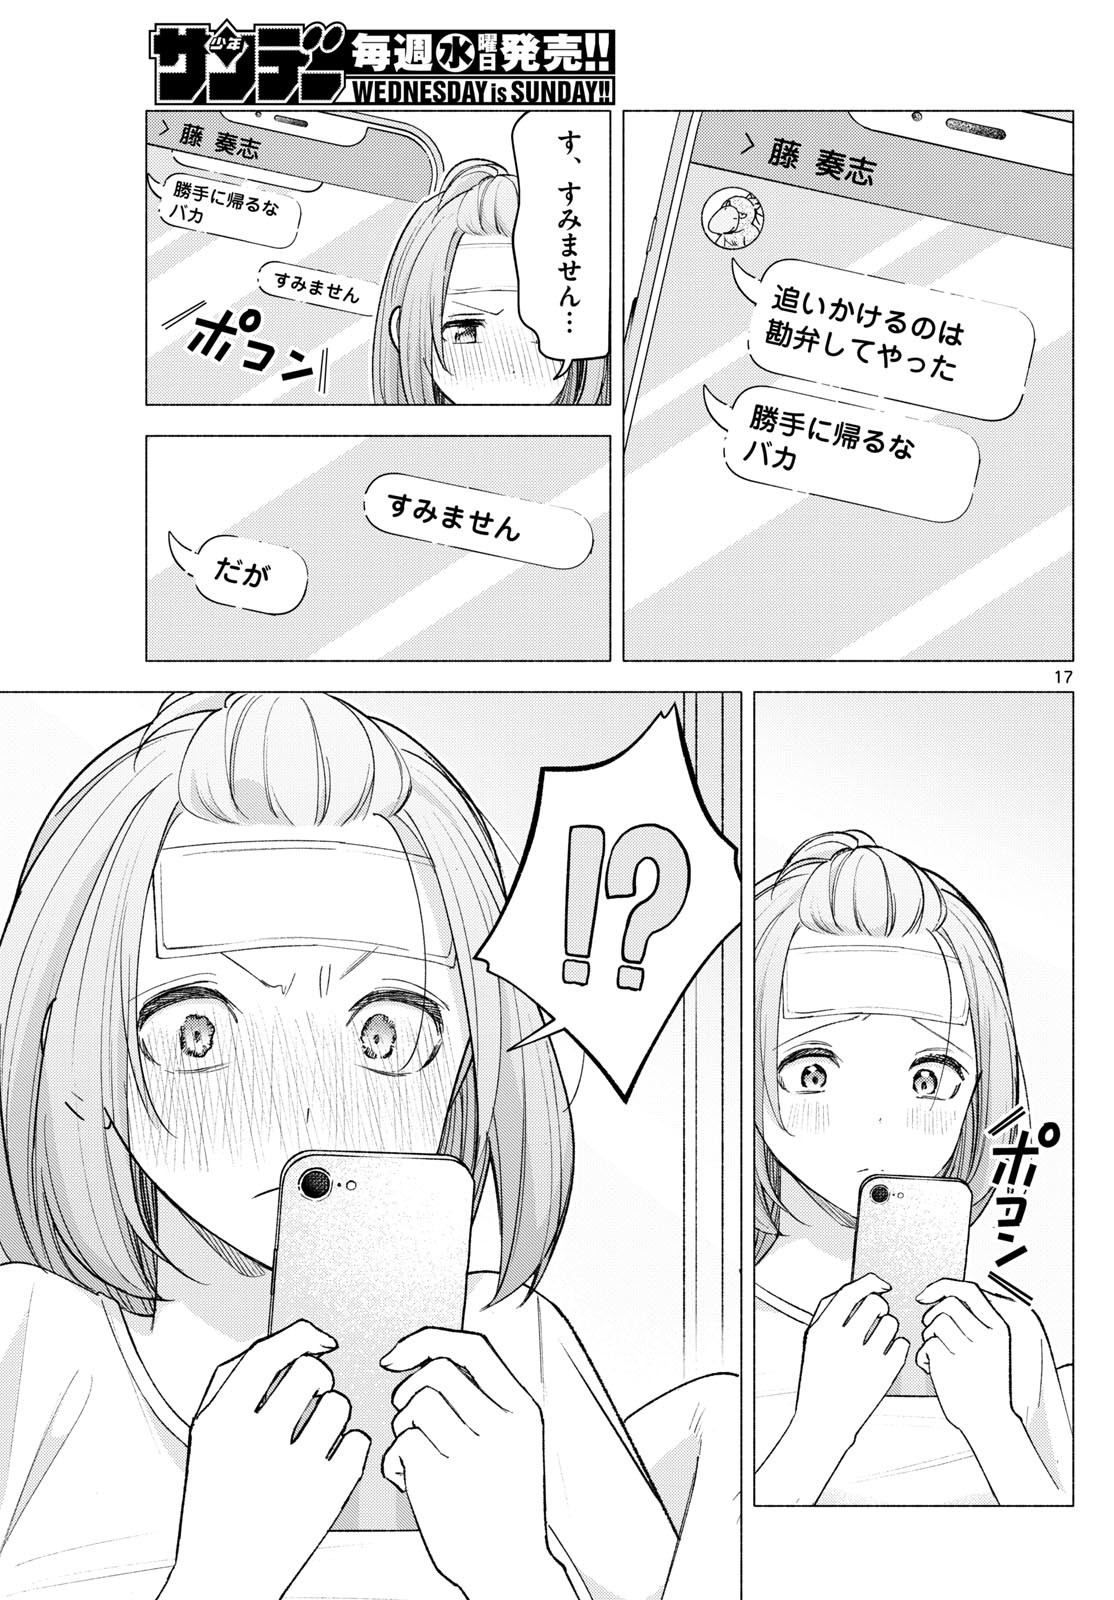 Kimi to Warui Koto ga Shitai - Chapter 059 - Page 17